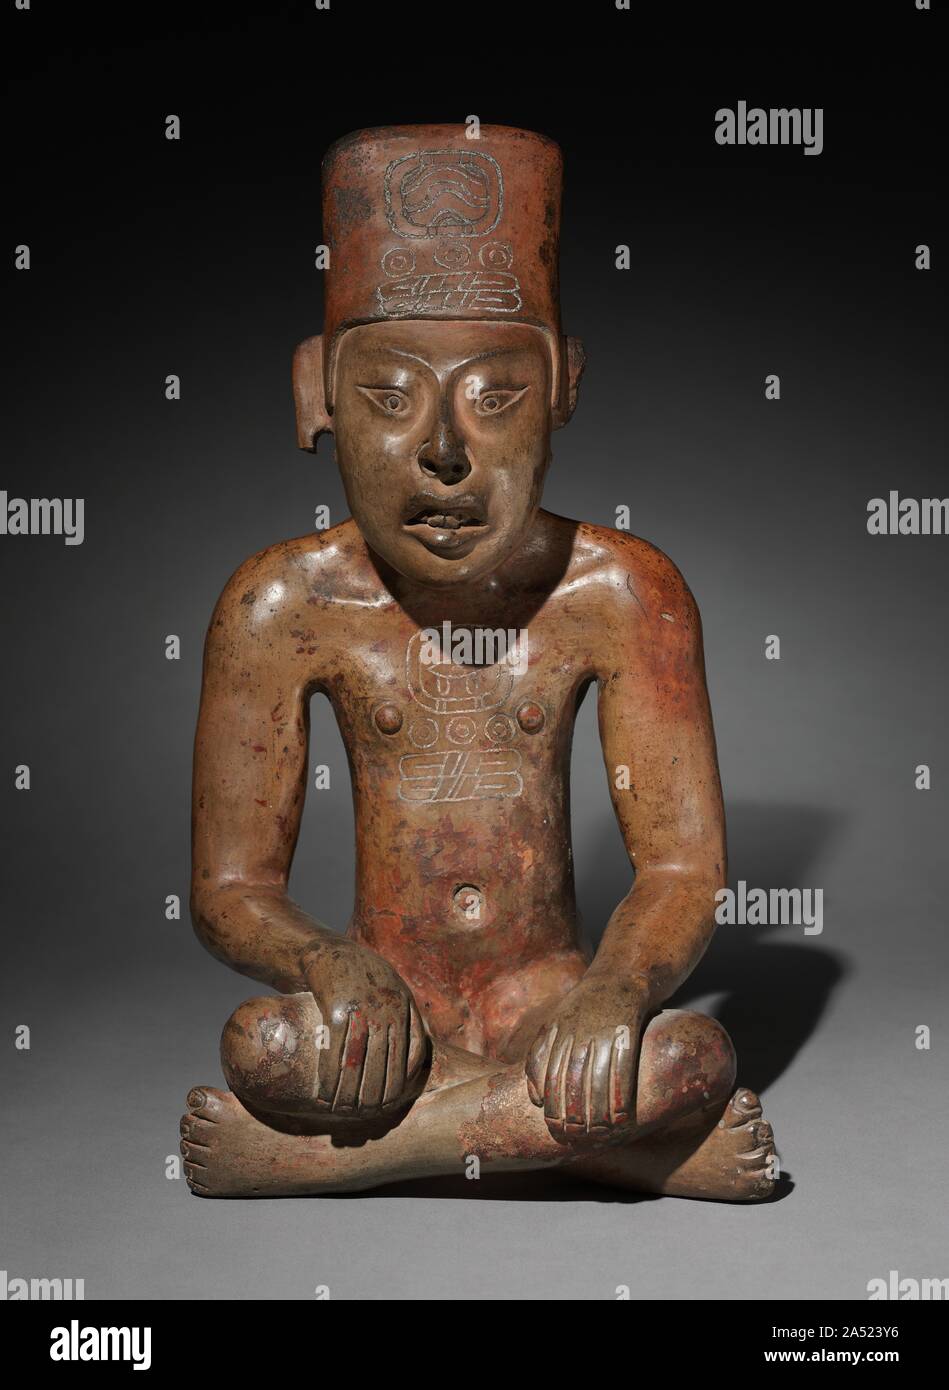 Personnage assis, 300 BC-AD 700. Le plus célèbre tombeau zapotèque céramique sont des urnes figurales flanquée de petits compagnons plus simple, similaire à celle-ci. Comme d'autres compagnons, cet exemple appartenait probablement à un ensemble de chiffres presque identiques ; deux autres restent au Mexique. L'identité des personnages de tombeaux en céramique-si l'homme d'élite, ancêtres royaux, ou des divinités est encore discuté. L'un des méso-zapotèque&# x2019;s premiers systèmes d'écriture, en témoignent les hiéroglyphes sur la coiffure et la poitrine. Ce sont les noms de jours civils, l'eau "13" et "13 Couteau de silex,&q Banque D'Images